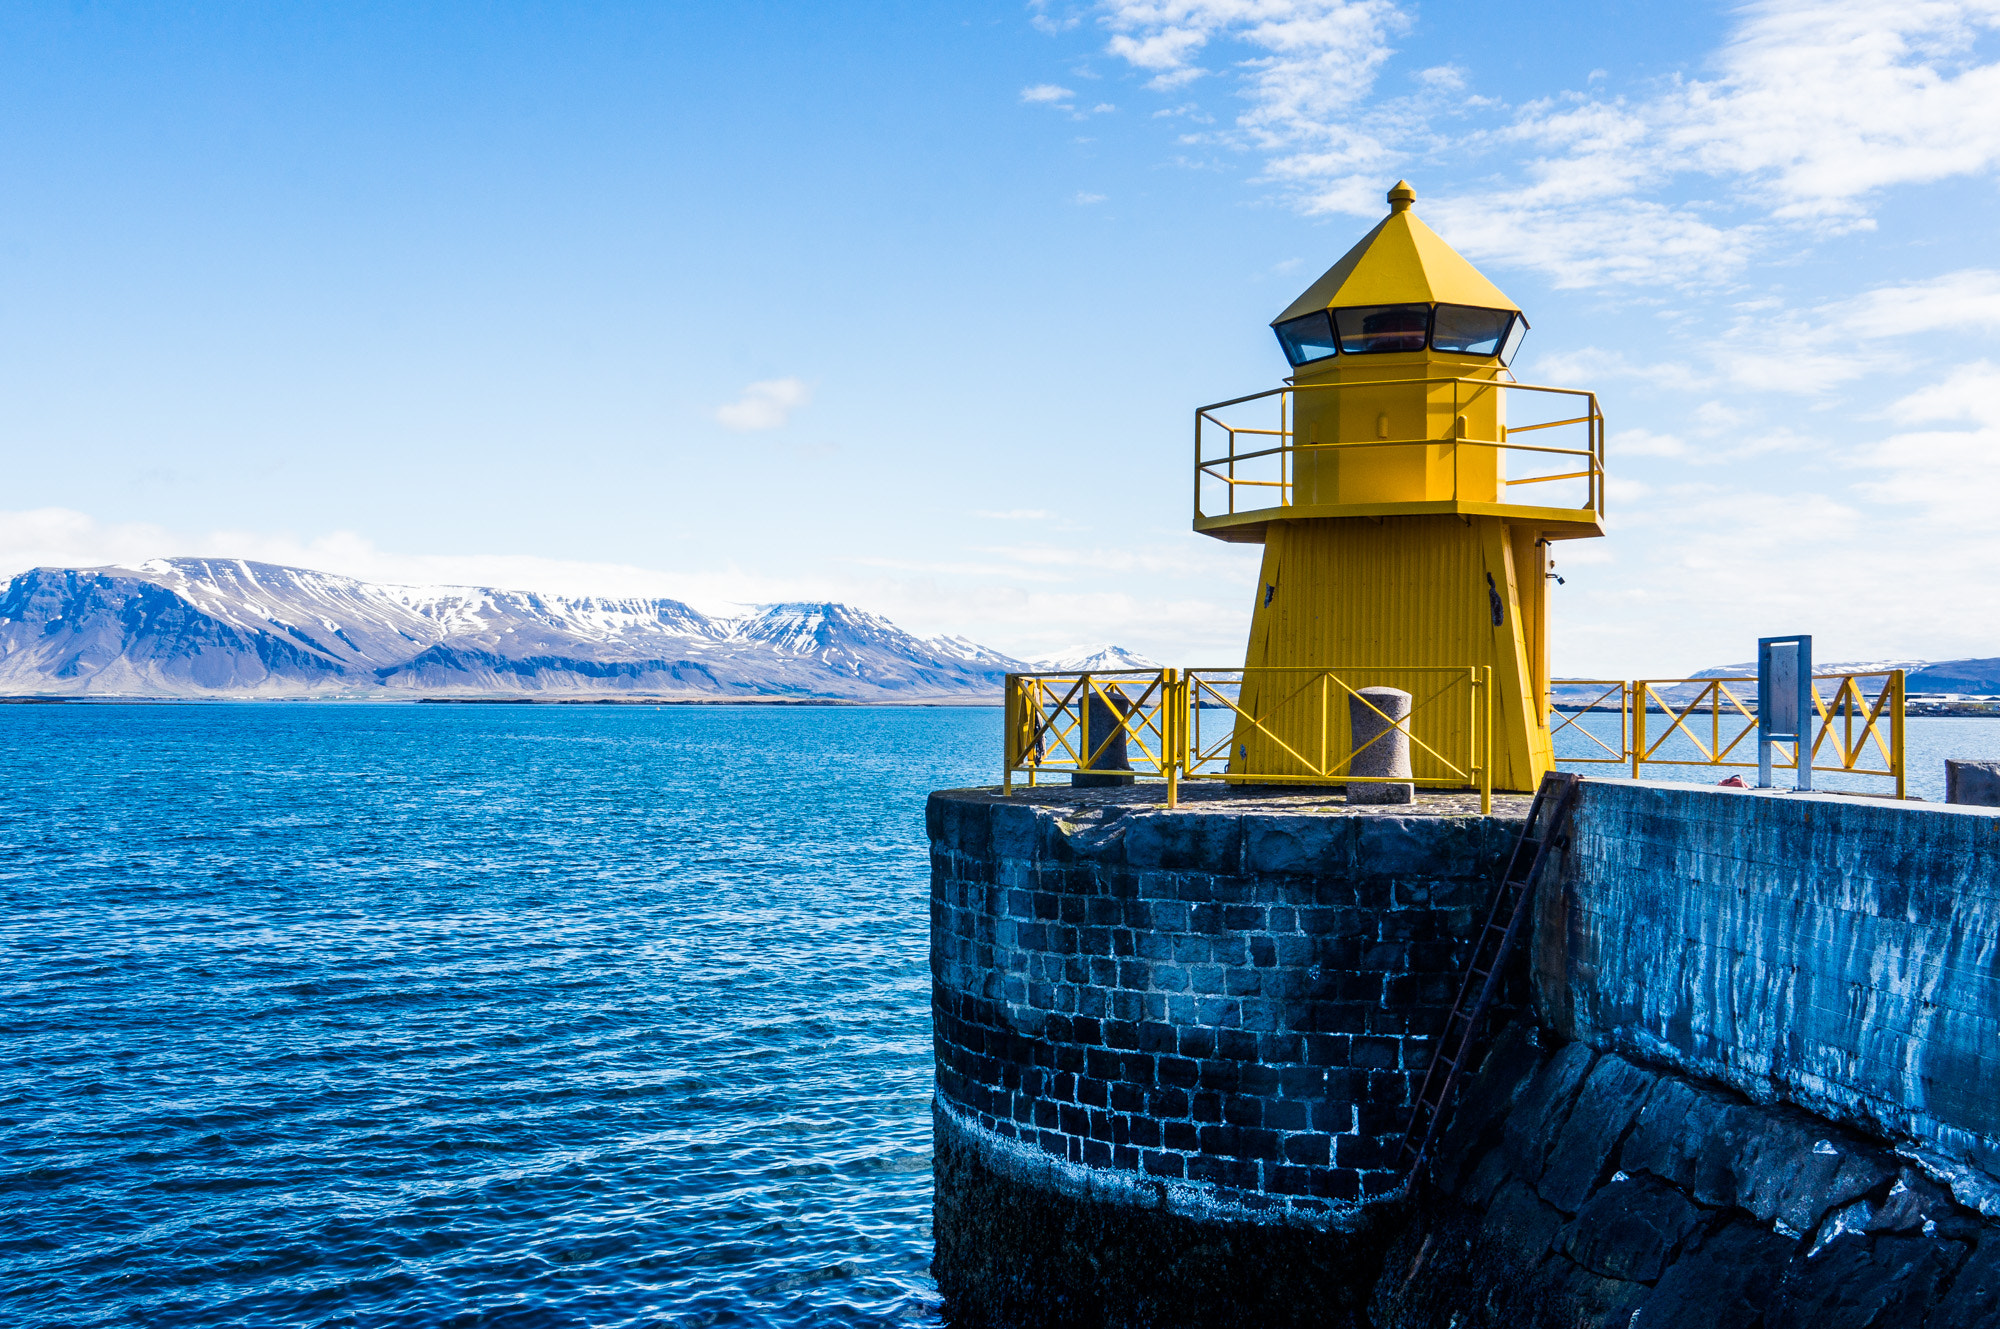 Sony Alpha NEX-6 + Sony E 18-200mm F3.5-6.3 OSS sample photo. Reykjavík harbor lighthouse photography